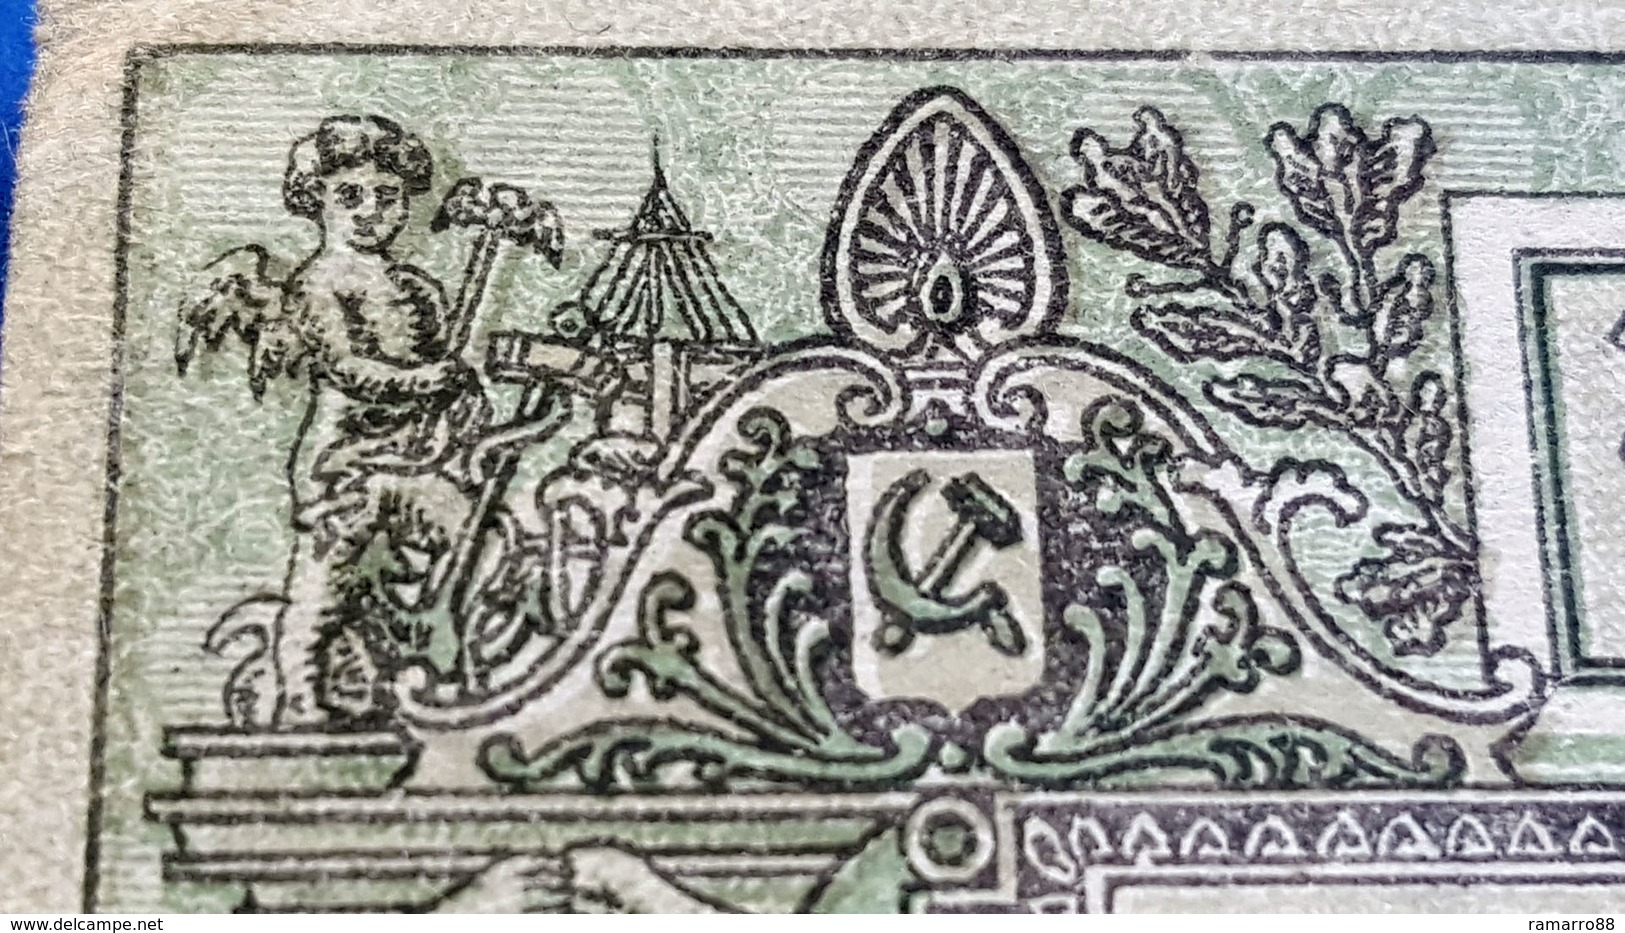 Russia / Transcaucasia / Azerbaijian 50000 Rubles 1921 pS716 VG~F